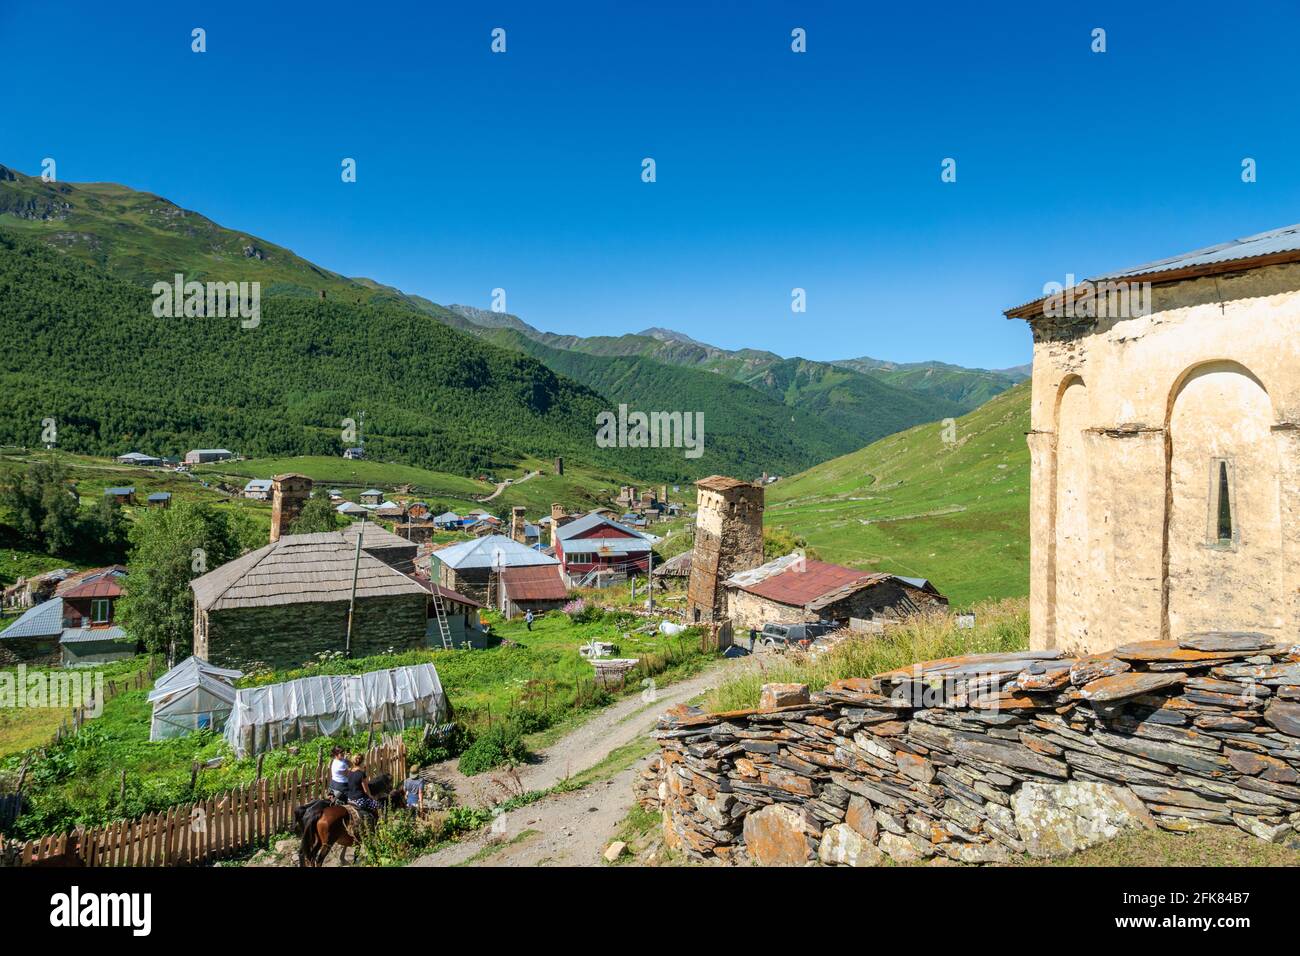 Paysage du village d'Ushguli dans la région de Svaneti, Géorgie - site classé au patrimoine mondial de l'UNESCO Banque D'Images